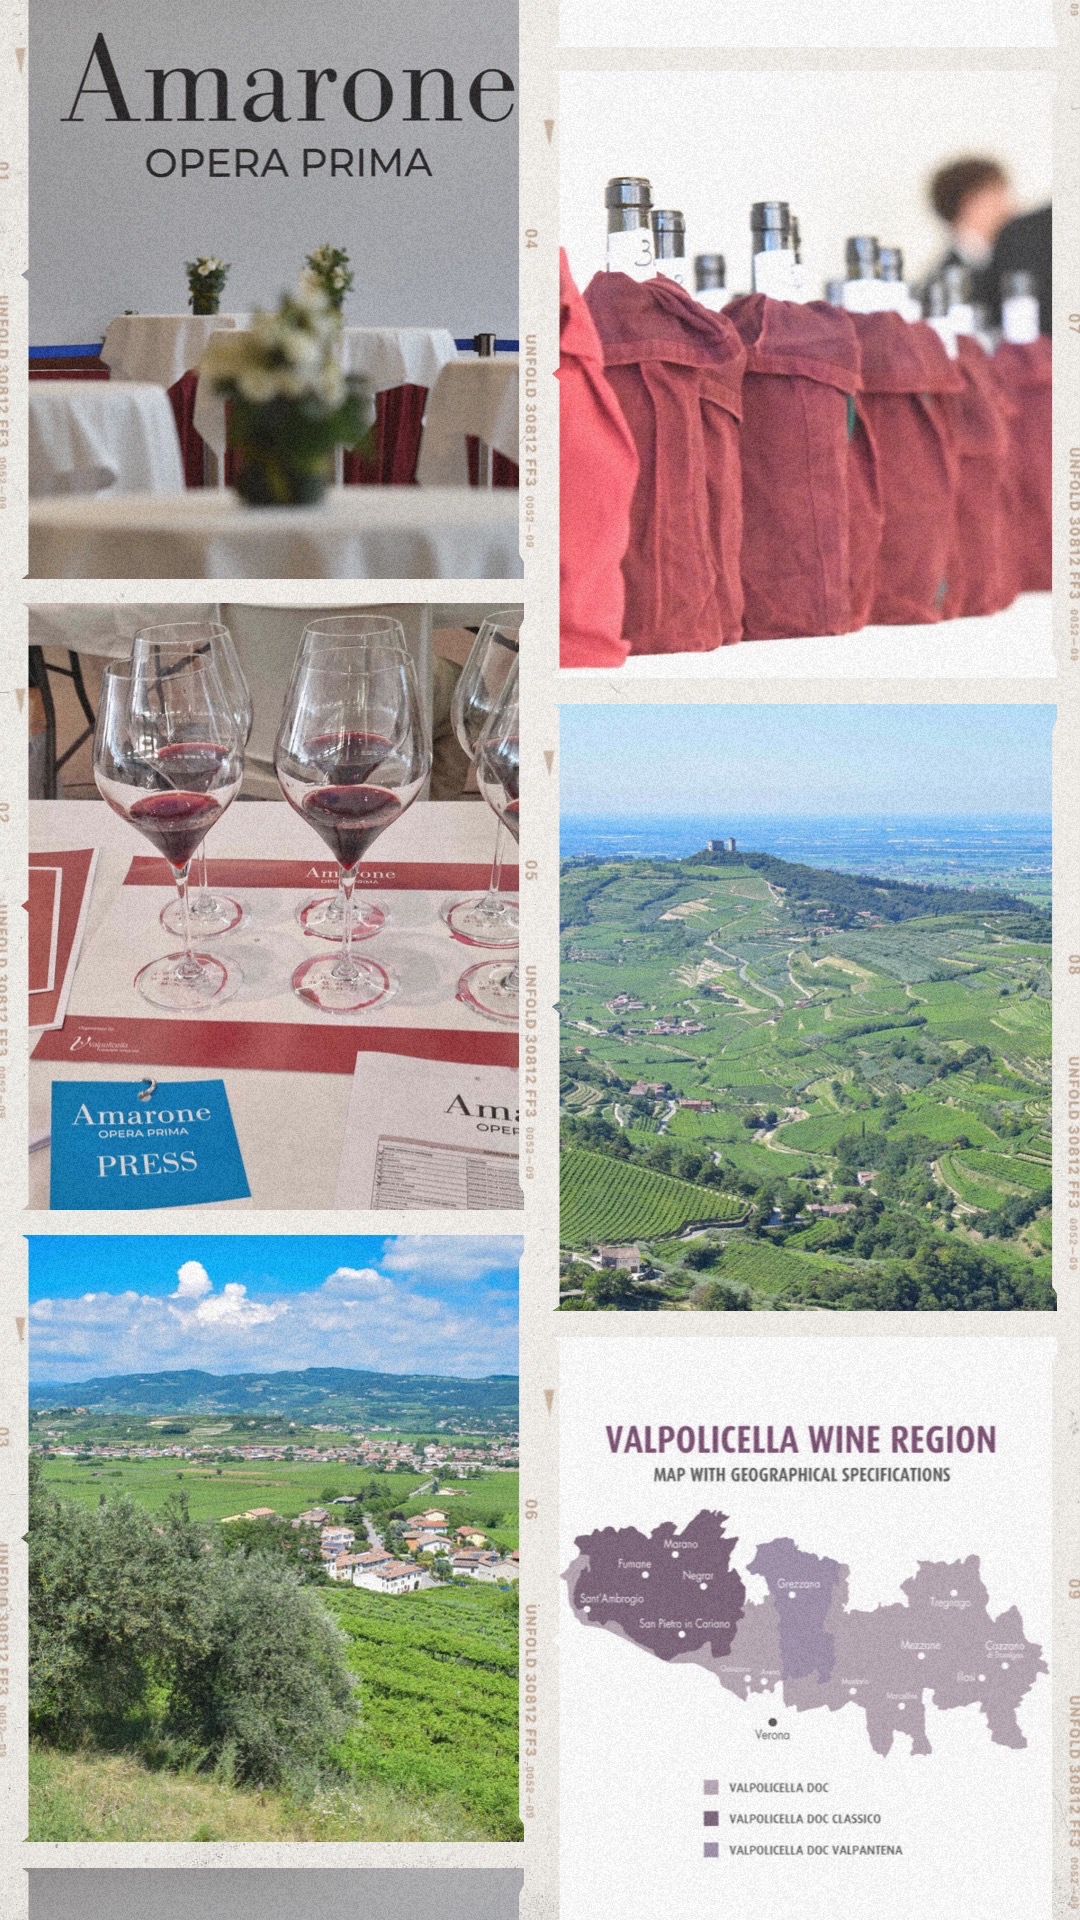 AMARONE OPERA PRIMA – A Special Event to Discover the Territory and Wines of Valpolicella – Filippo Magnani